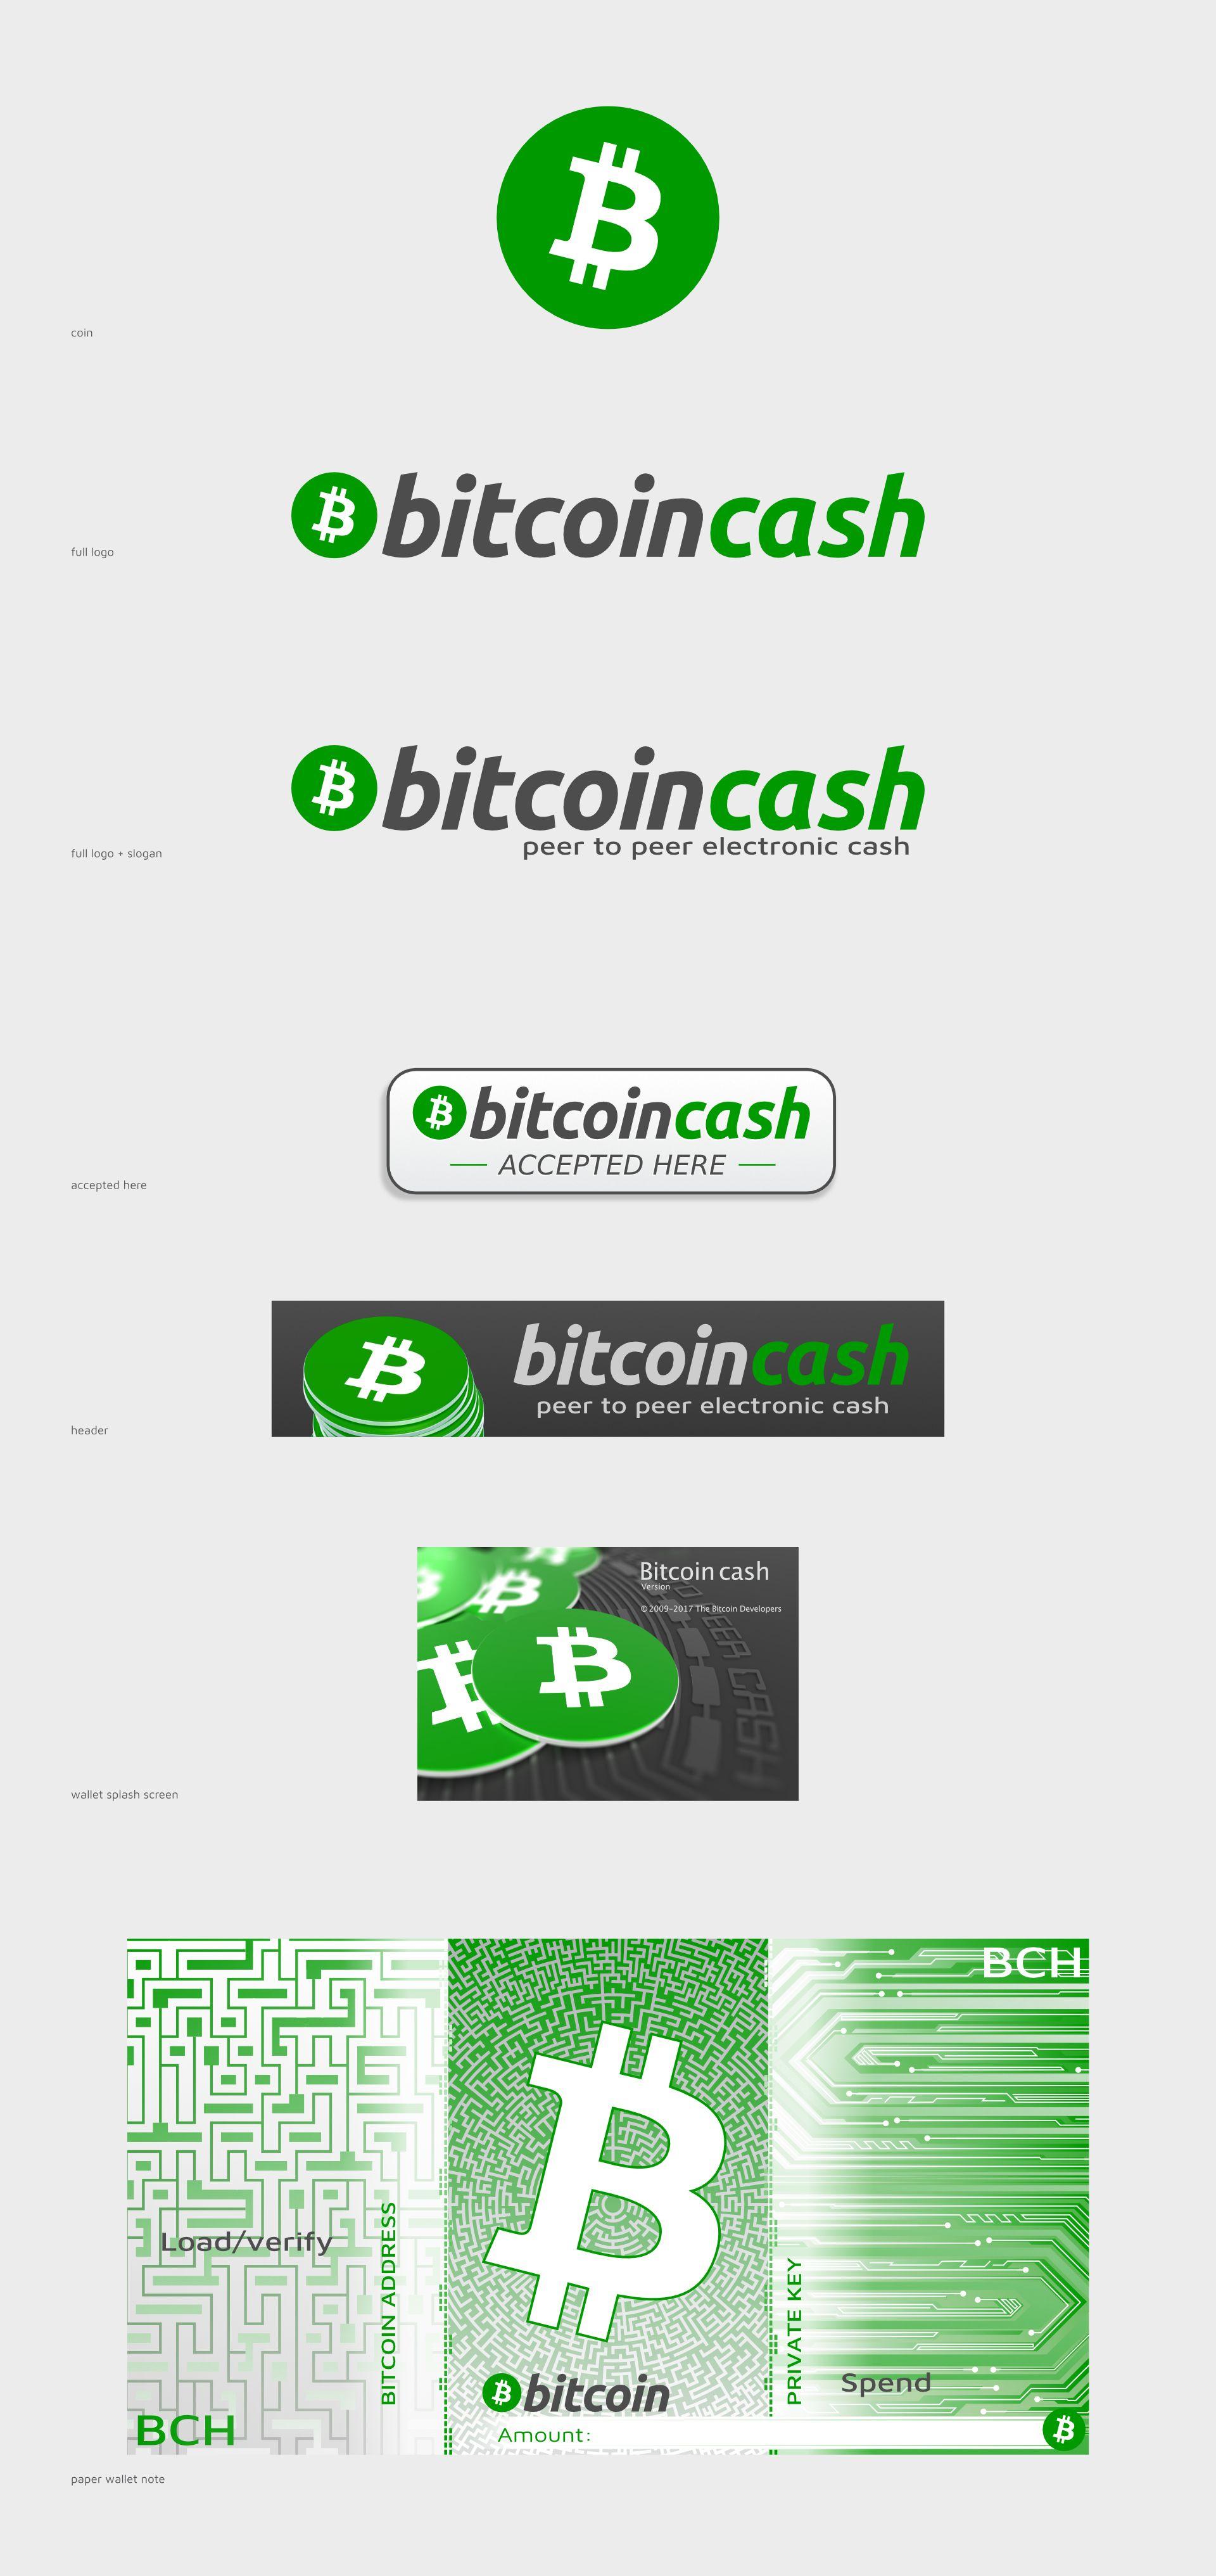 Cash Accepted Logo - bitcoin cash logo & branding - The Bitcoin Forum